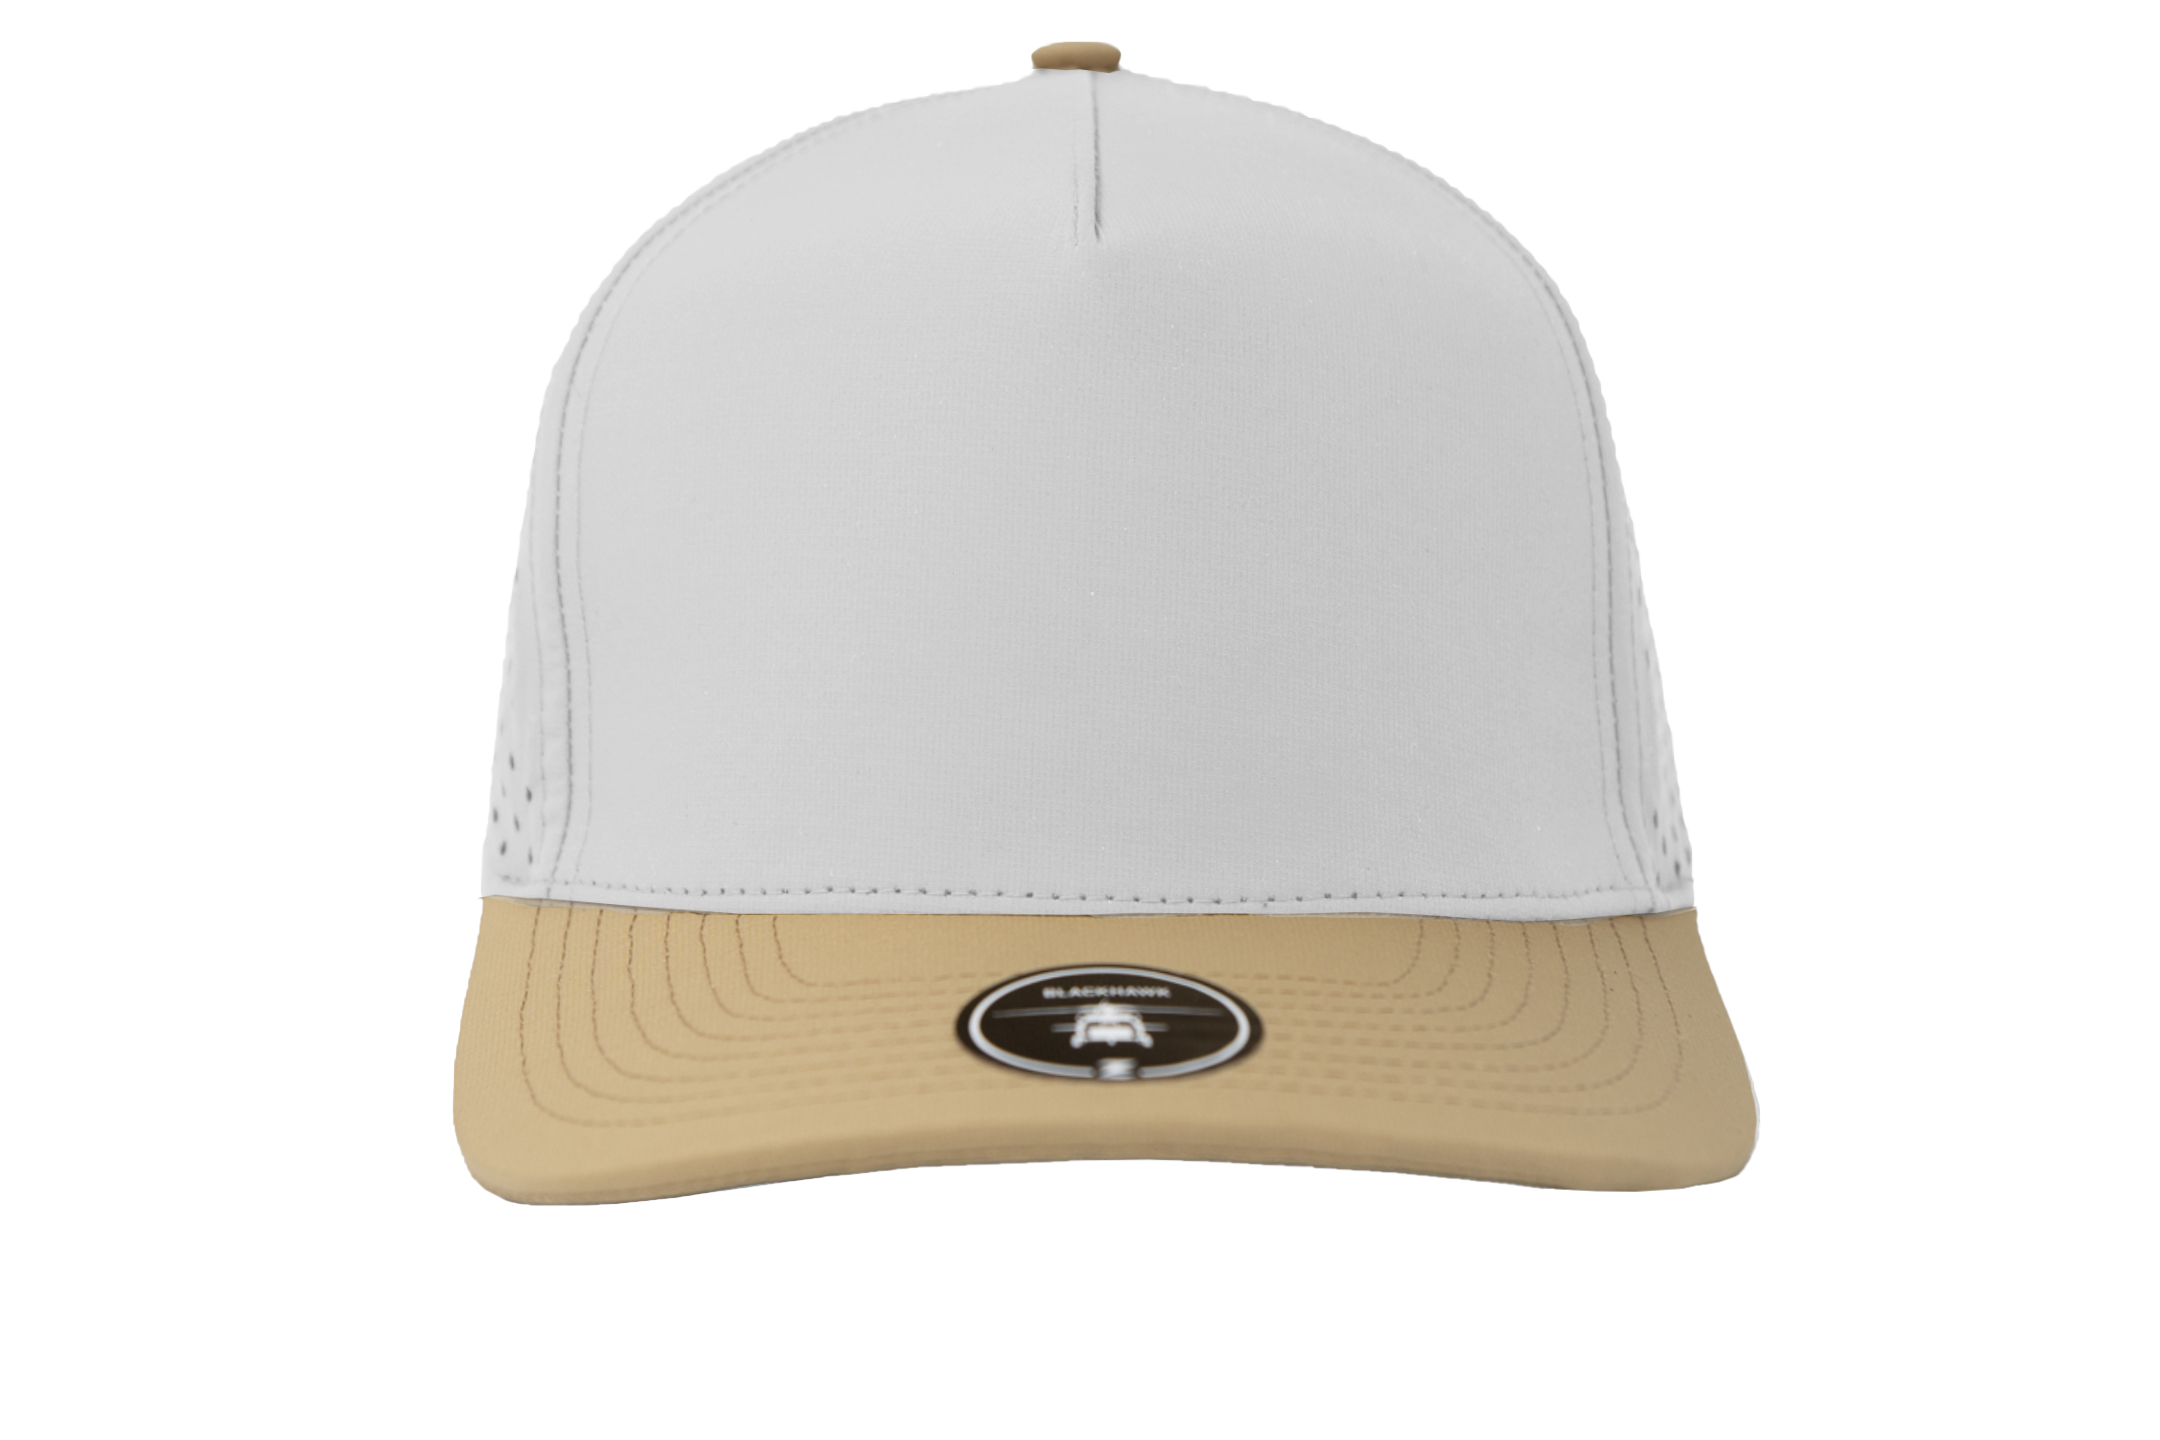 Custom Hat Blackhawk Khaki White Front View